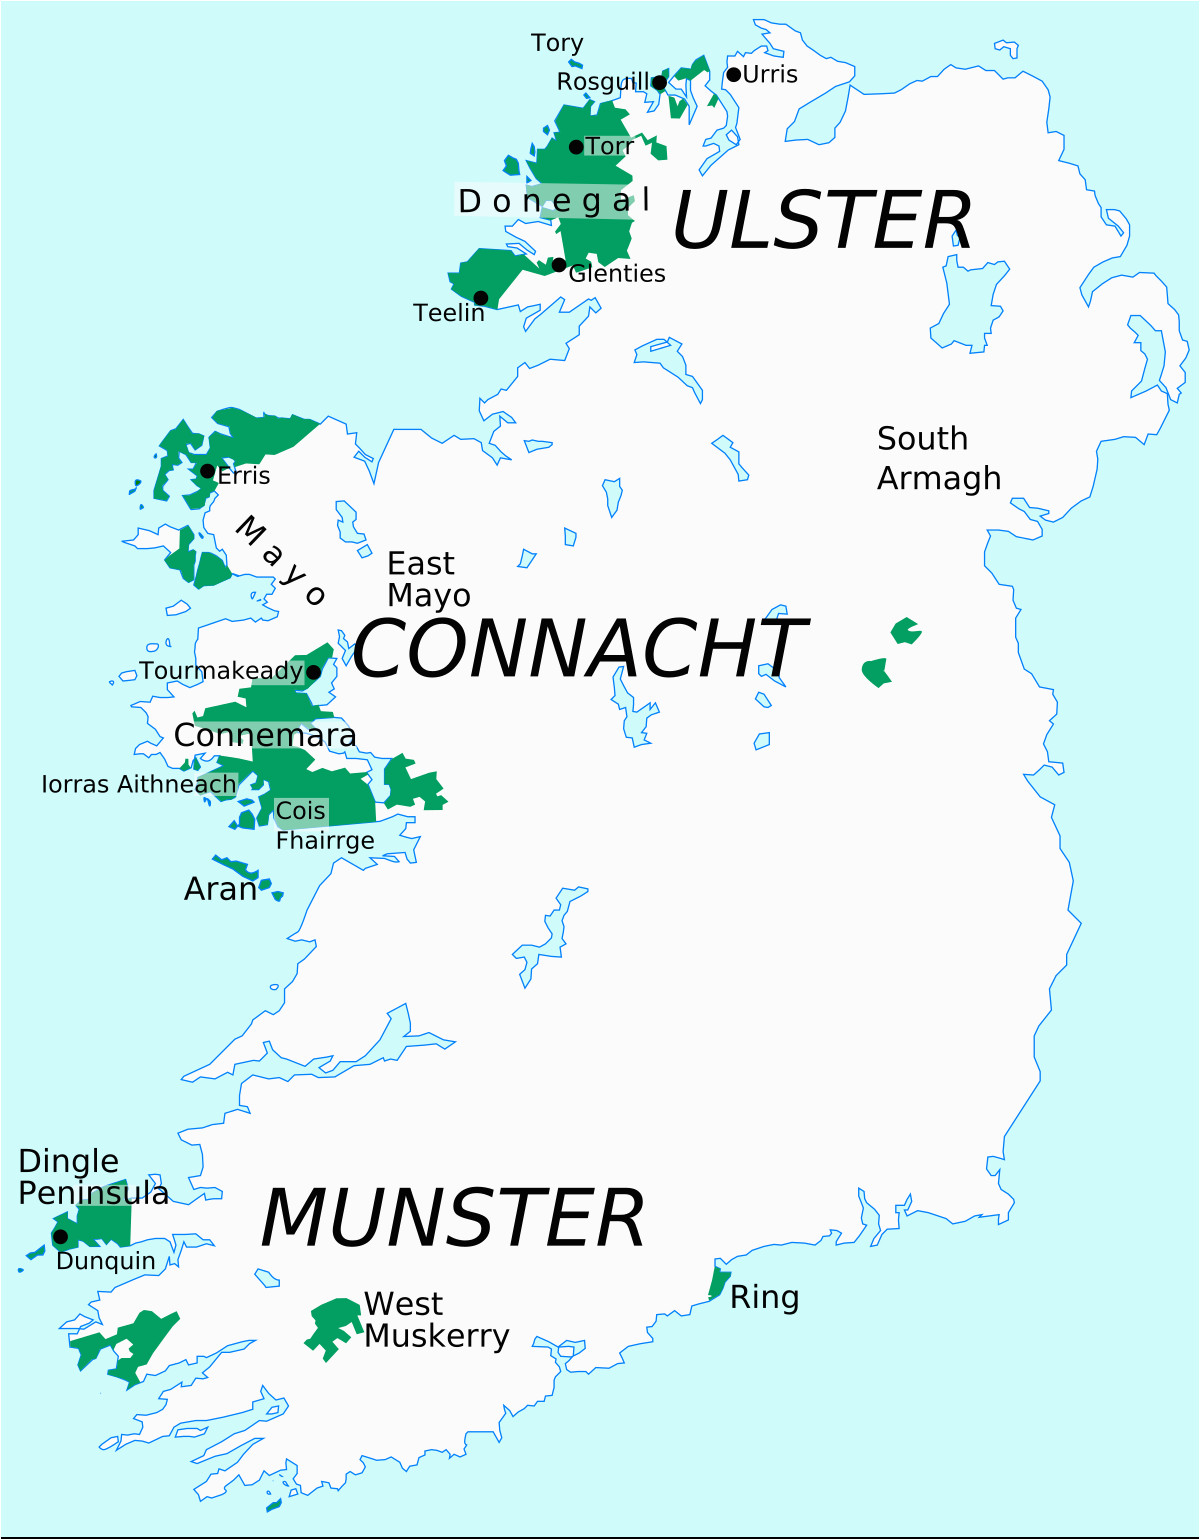 Connaught Ireland Map Gaeltacht Wikipedia